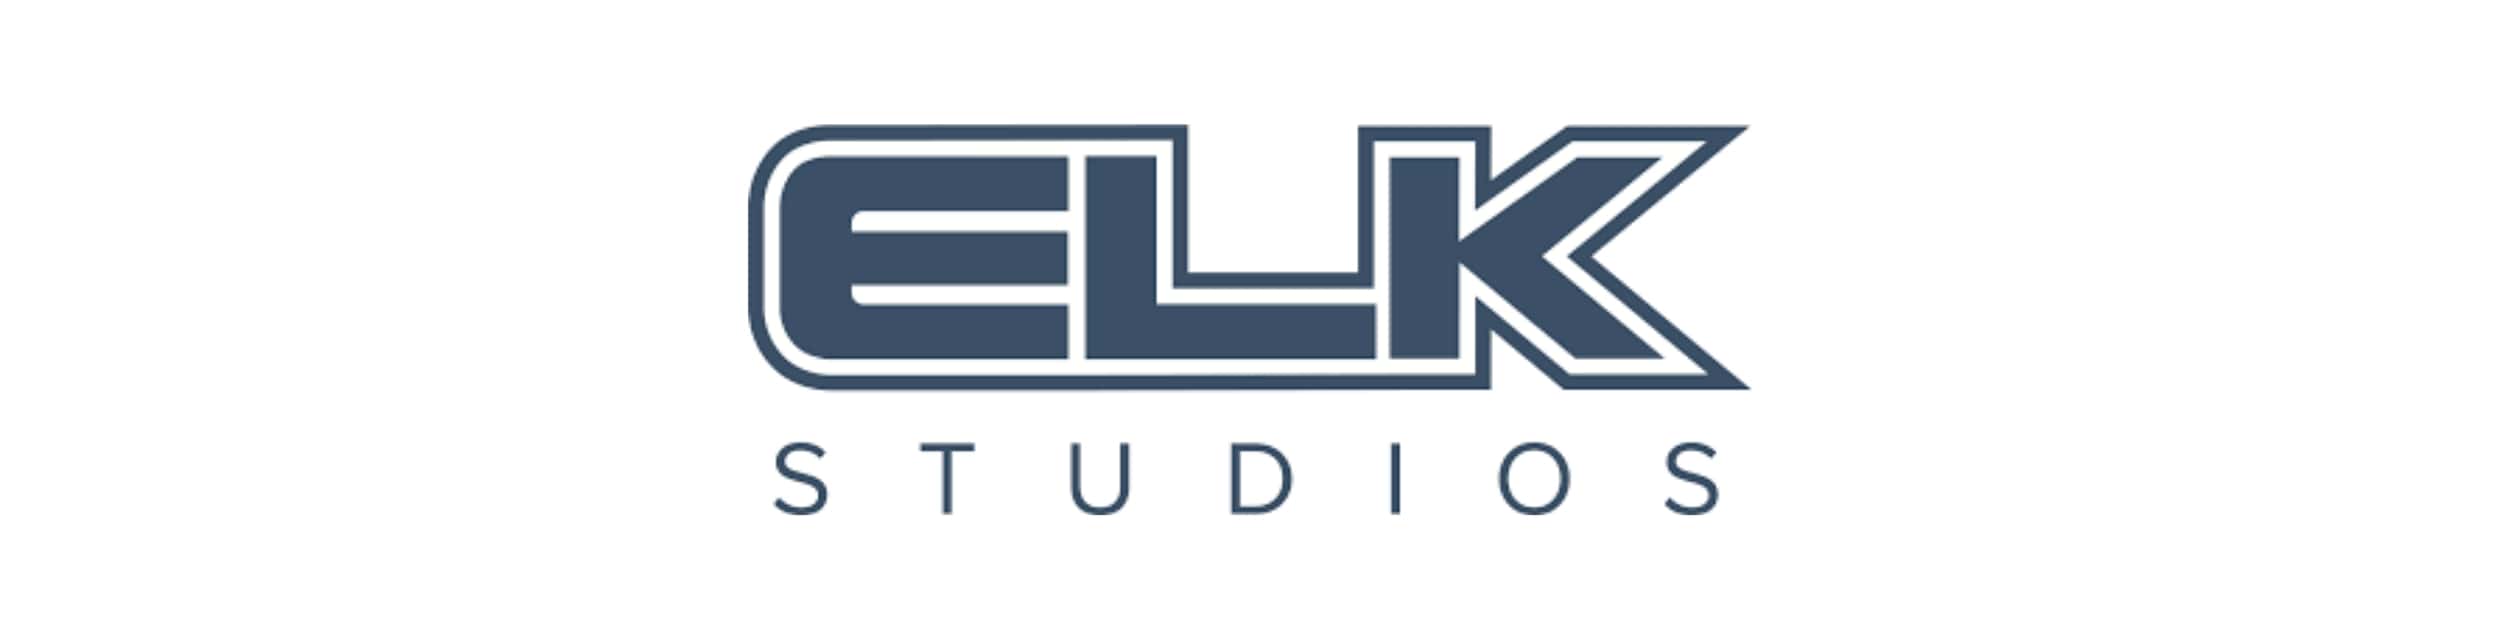 ELK Studios logga